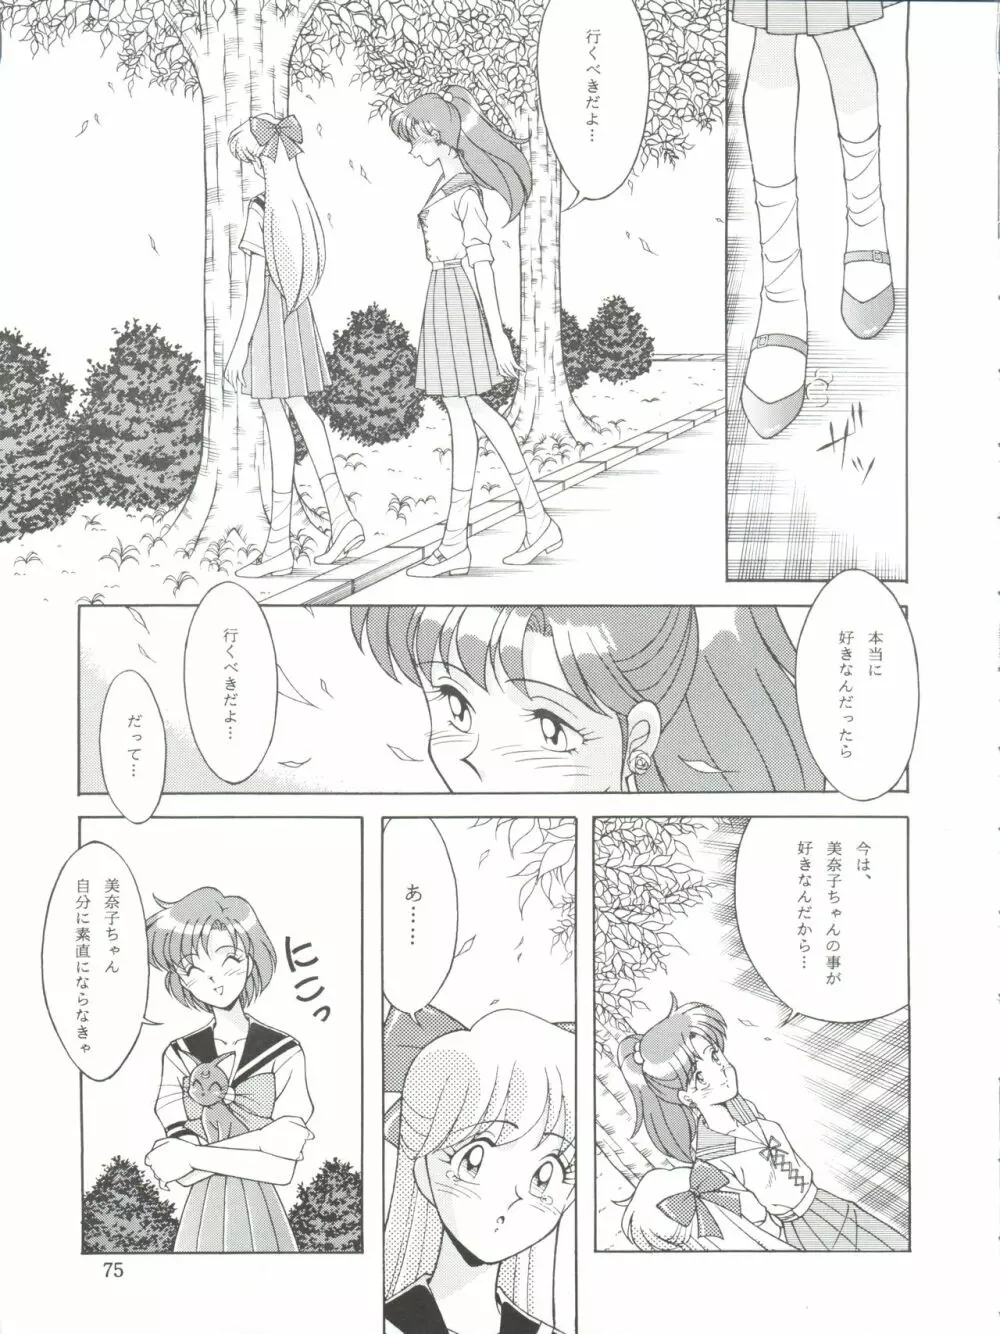 NANIWA-YA FINAL DRESS UP! - page75